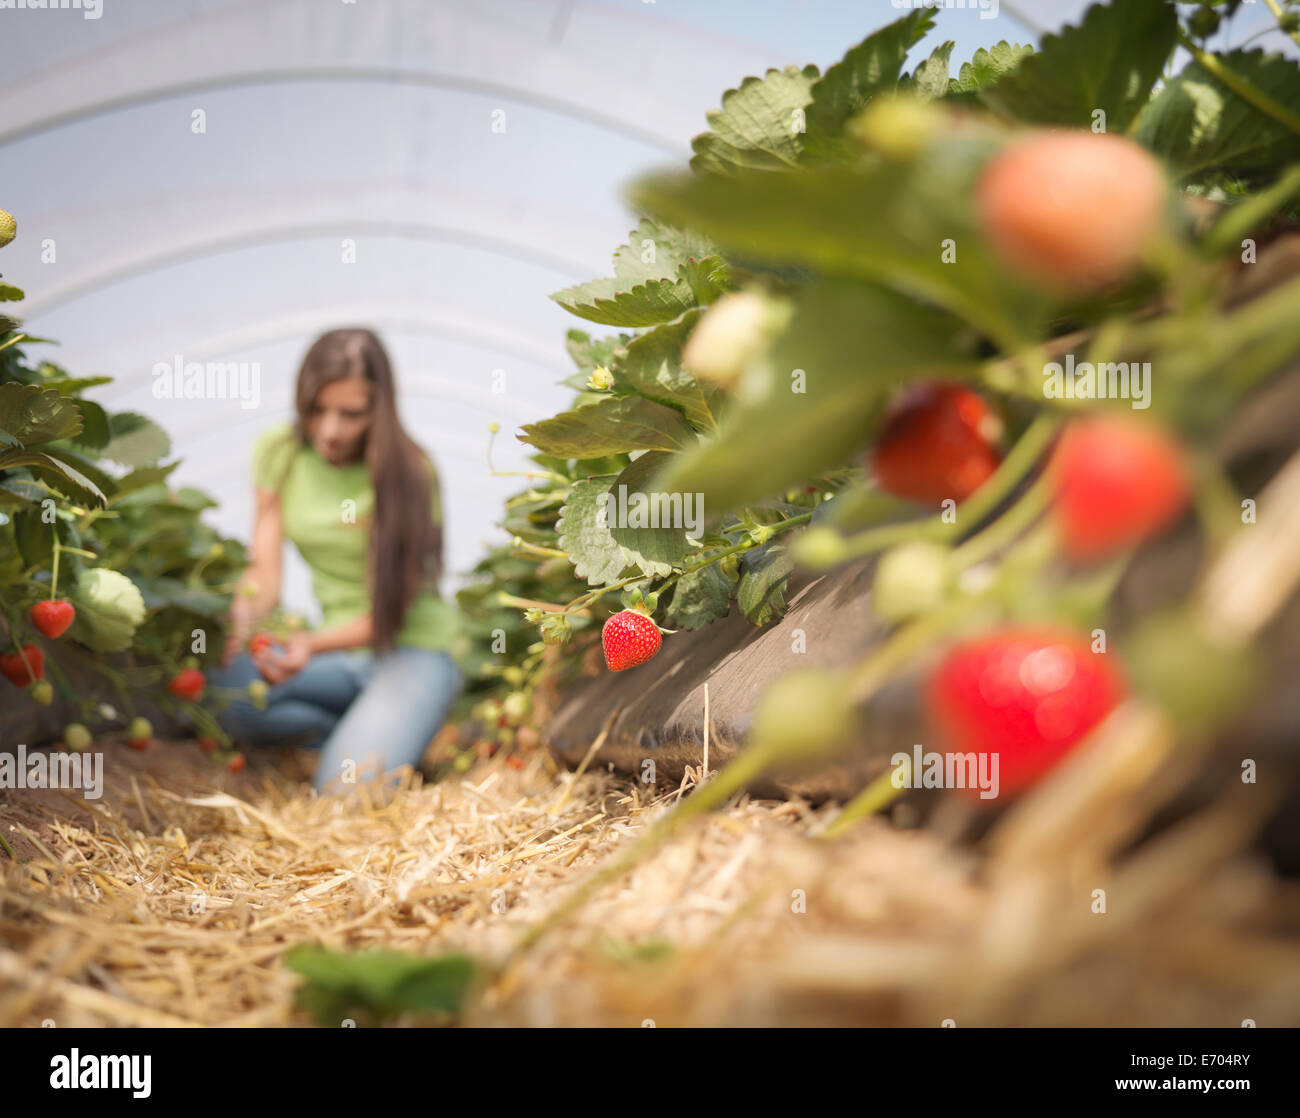 Trabajador recogiendo fresas en granja de frutas Foto de stock